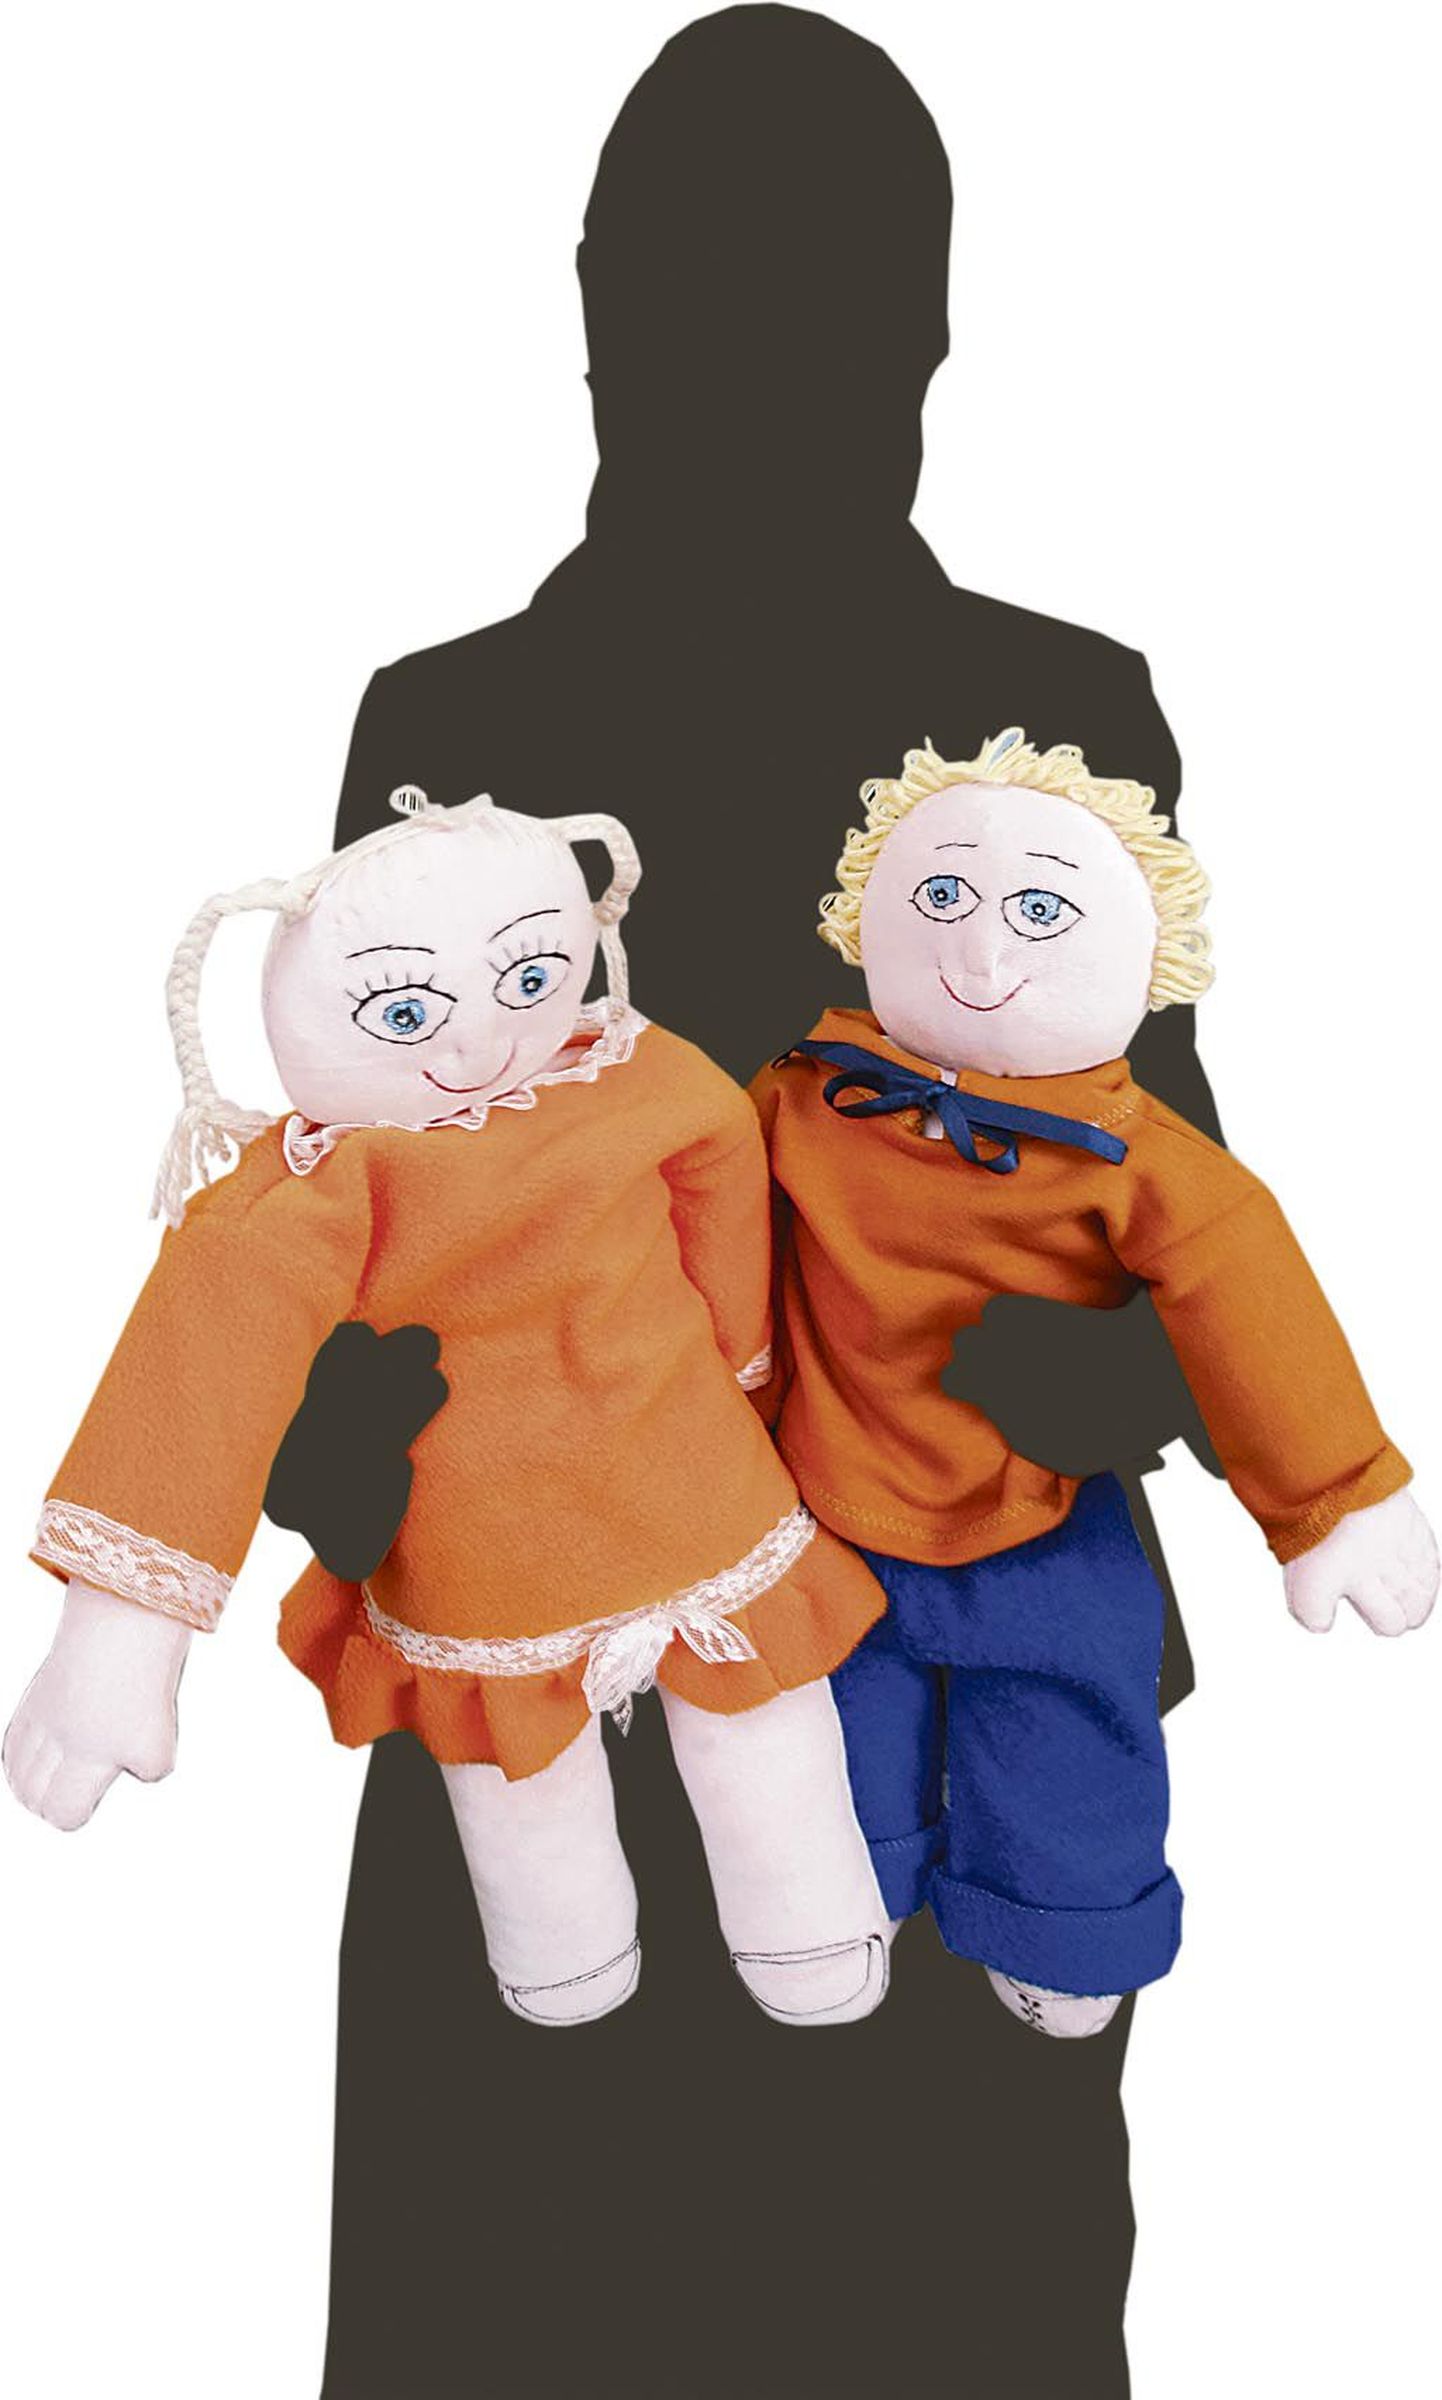 Eesti politseis kasutusel olevad anatoomilised nukud aitavad väärkoheldud lastel korrakaitsjatele juhtunut kirjeldada.